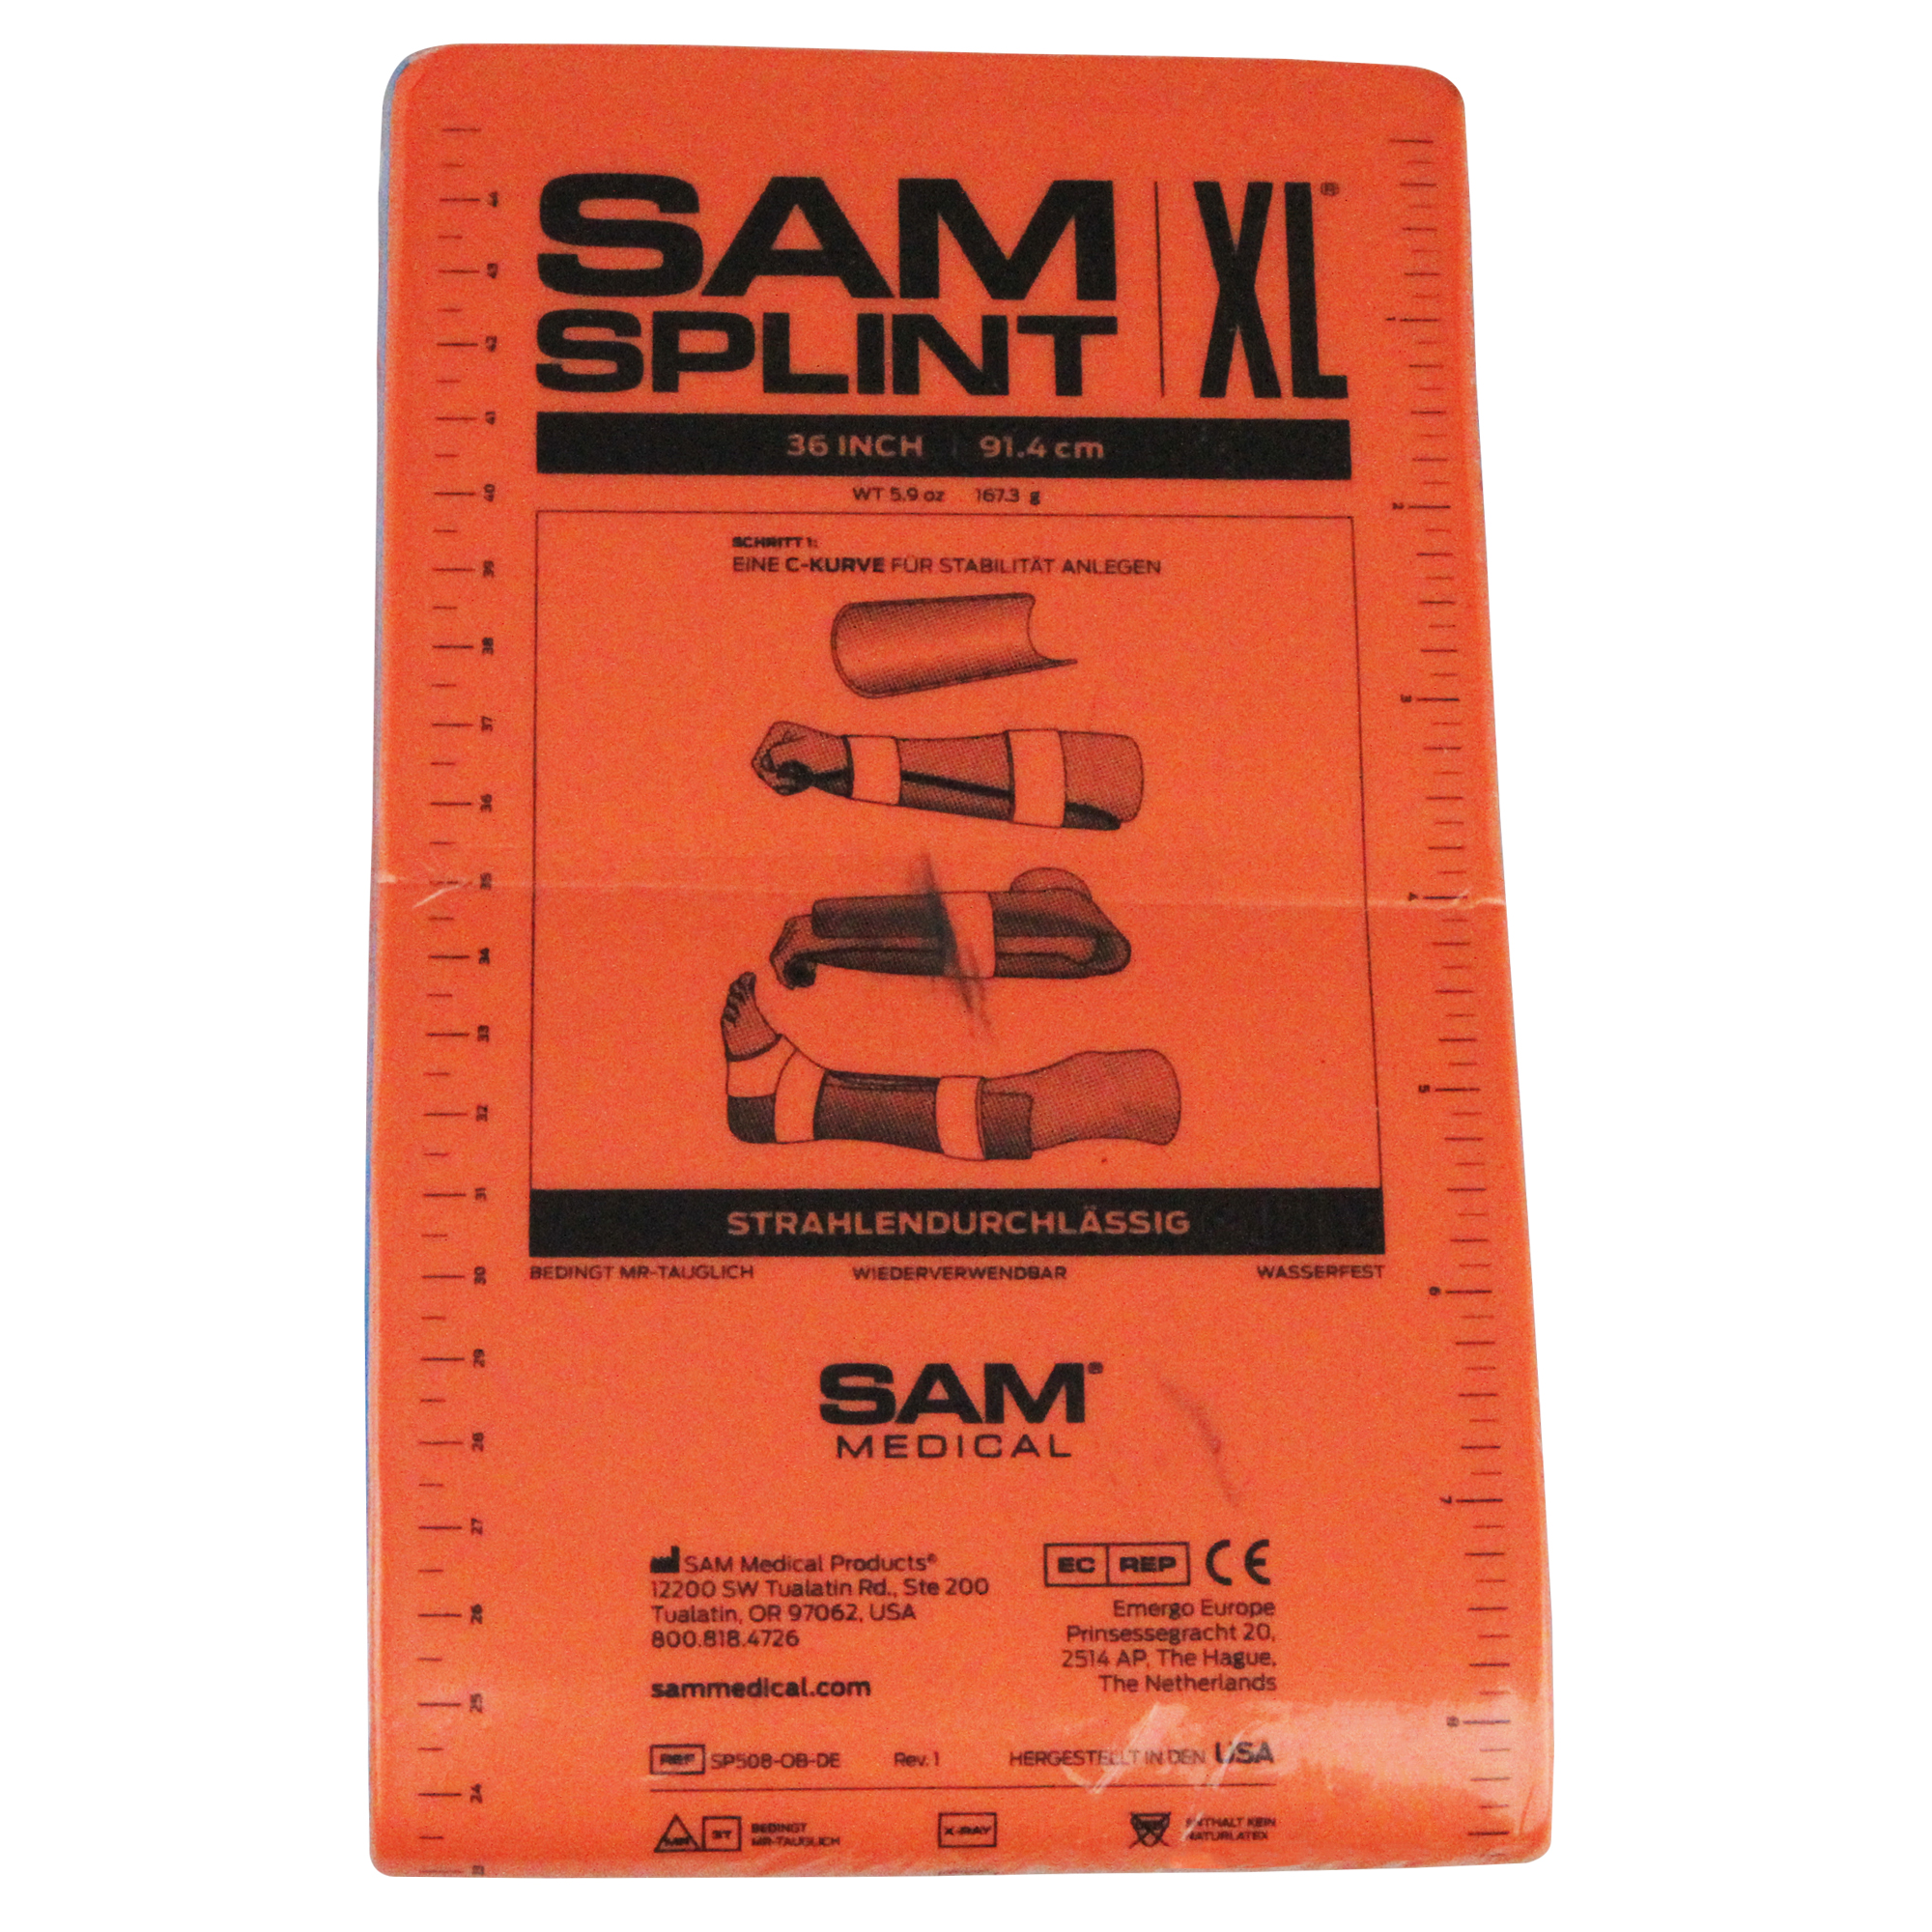 SAM Splint XL Schiene 14 x 91,44 cm orange/blau gefaltet